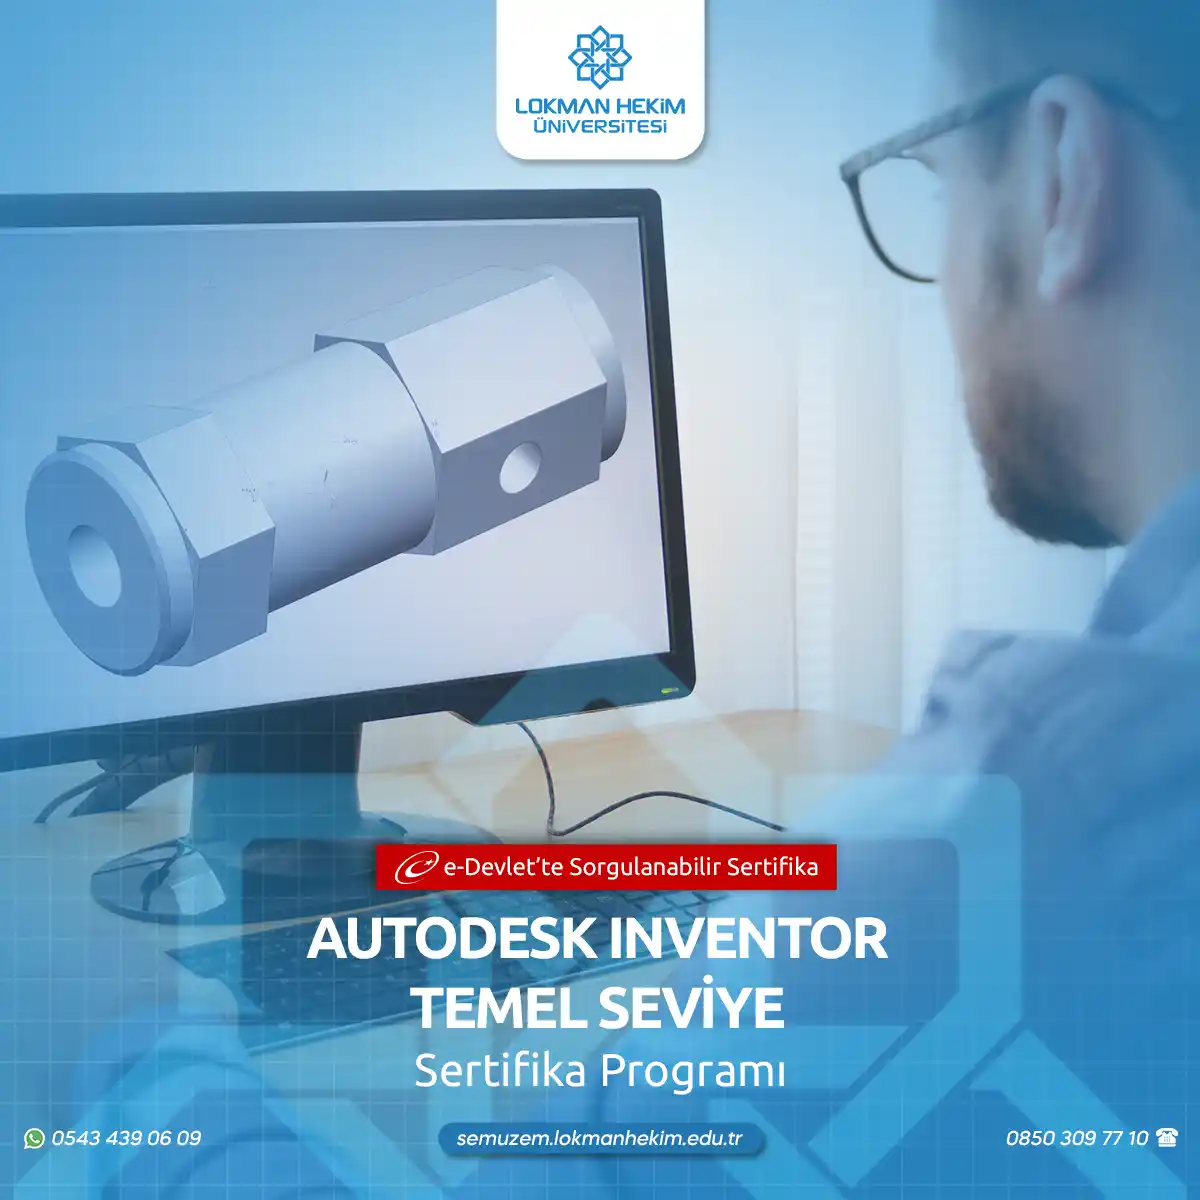 Autodesk Inventor Temel Seviye Sertifika Programı